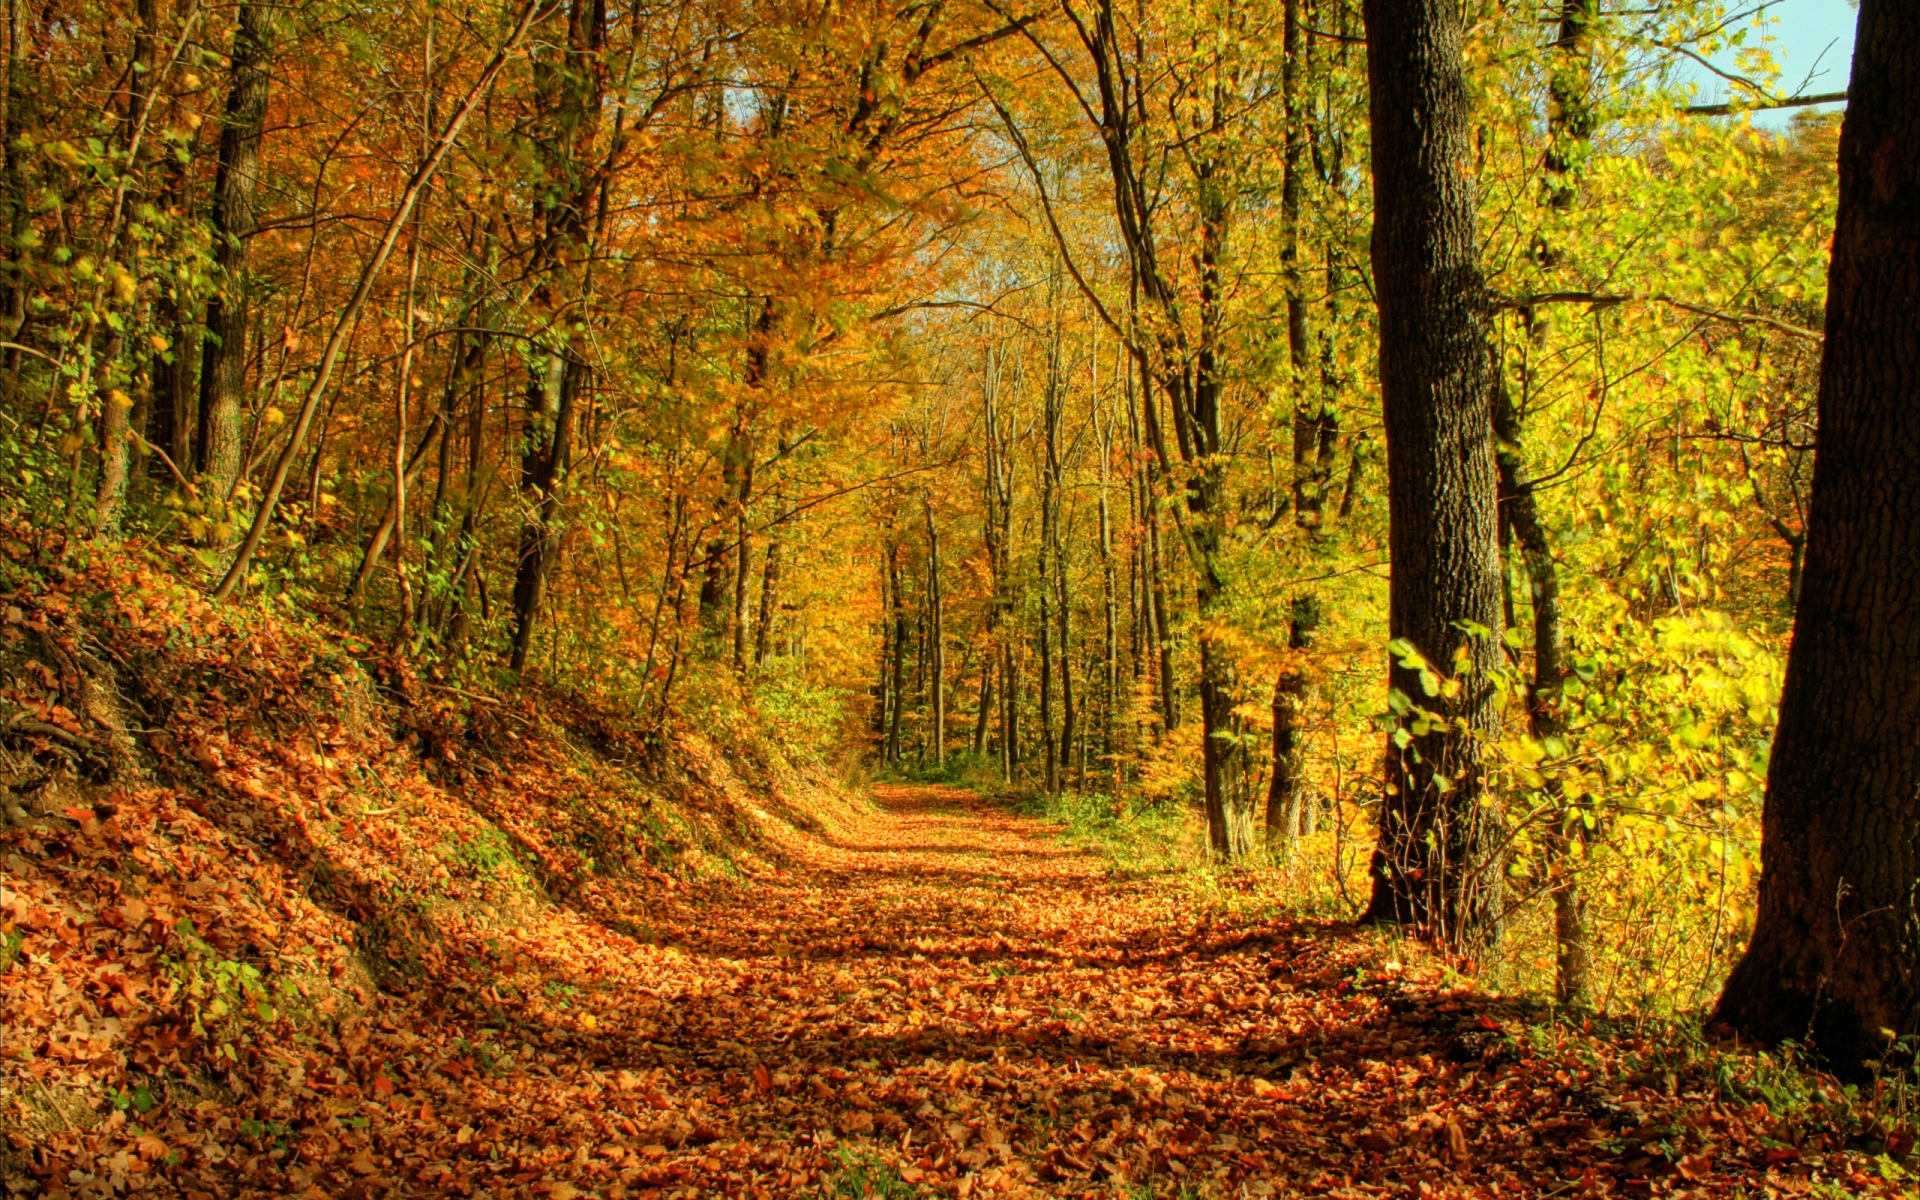 Картинки Дерево, дорога, листья, октябрь, золото, полдень, тени фото и обои на рабочий стол